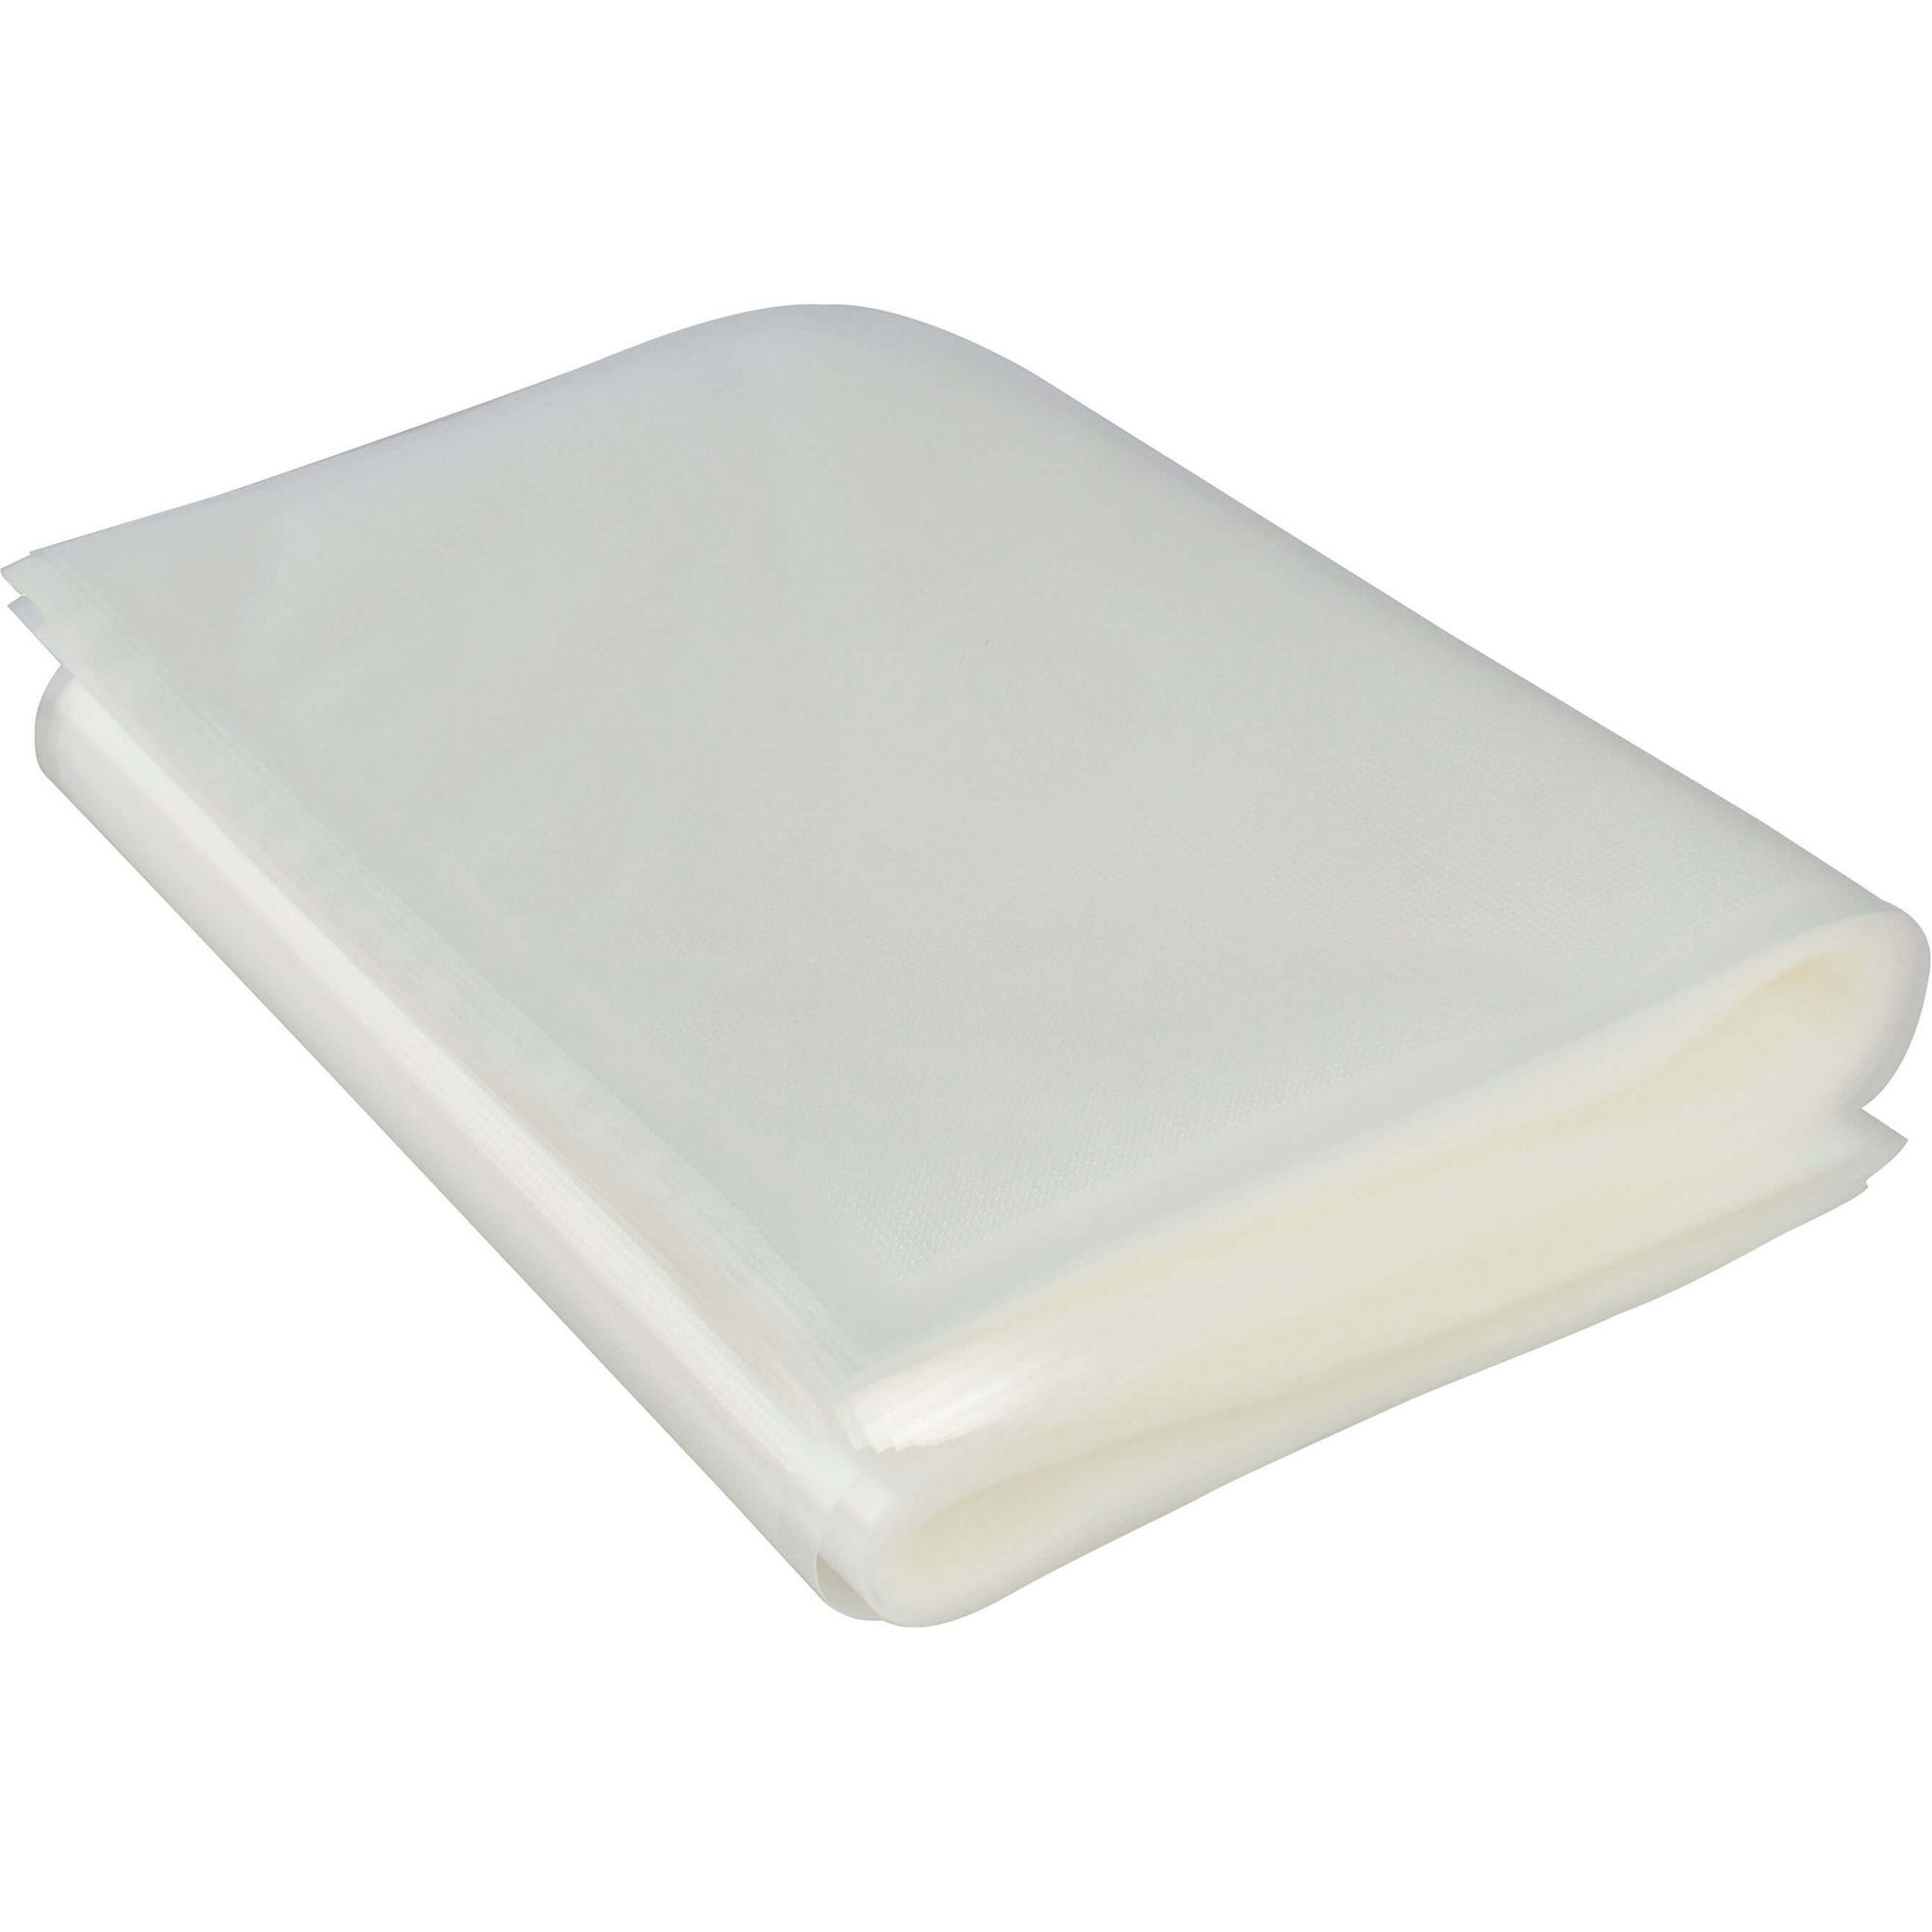 Пакеты для вакуумного упаковщика Gemlux GL-VB2840-50P, цвет белый, размер 28x40 см